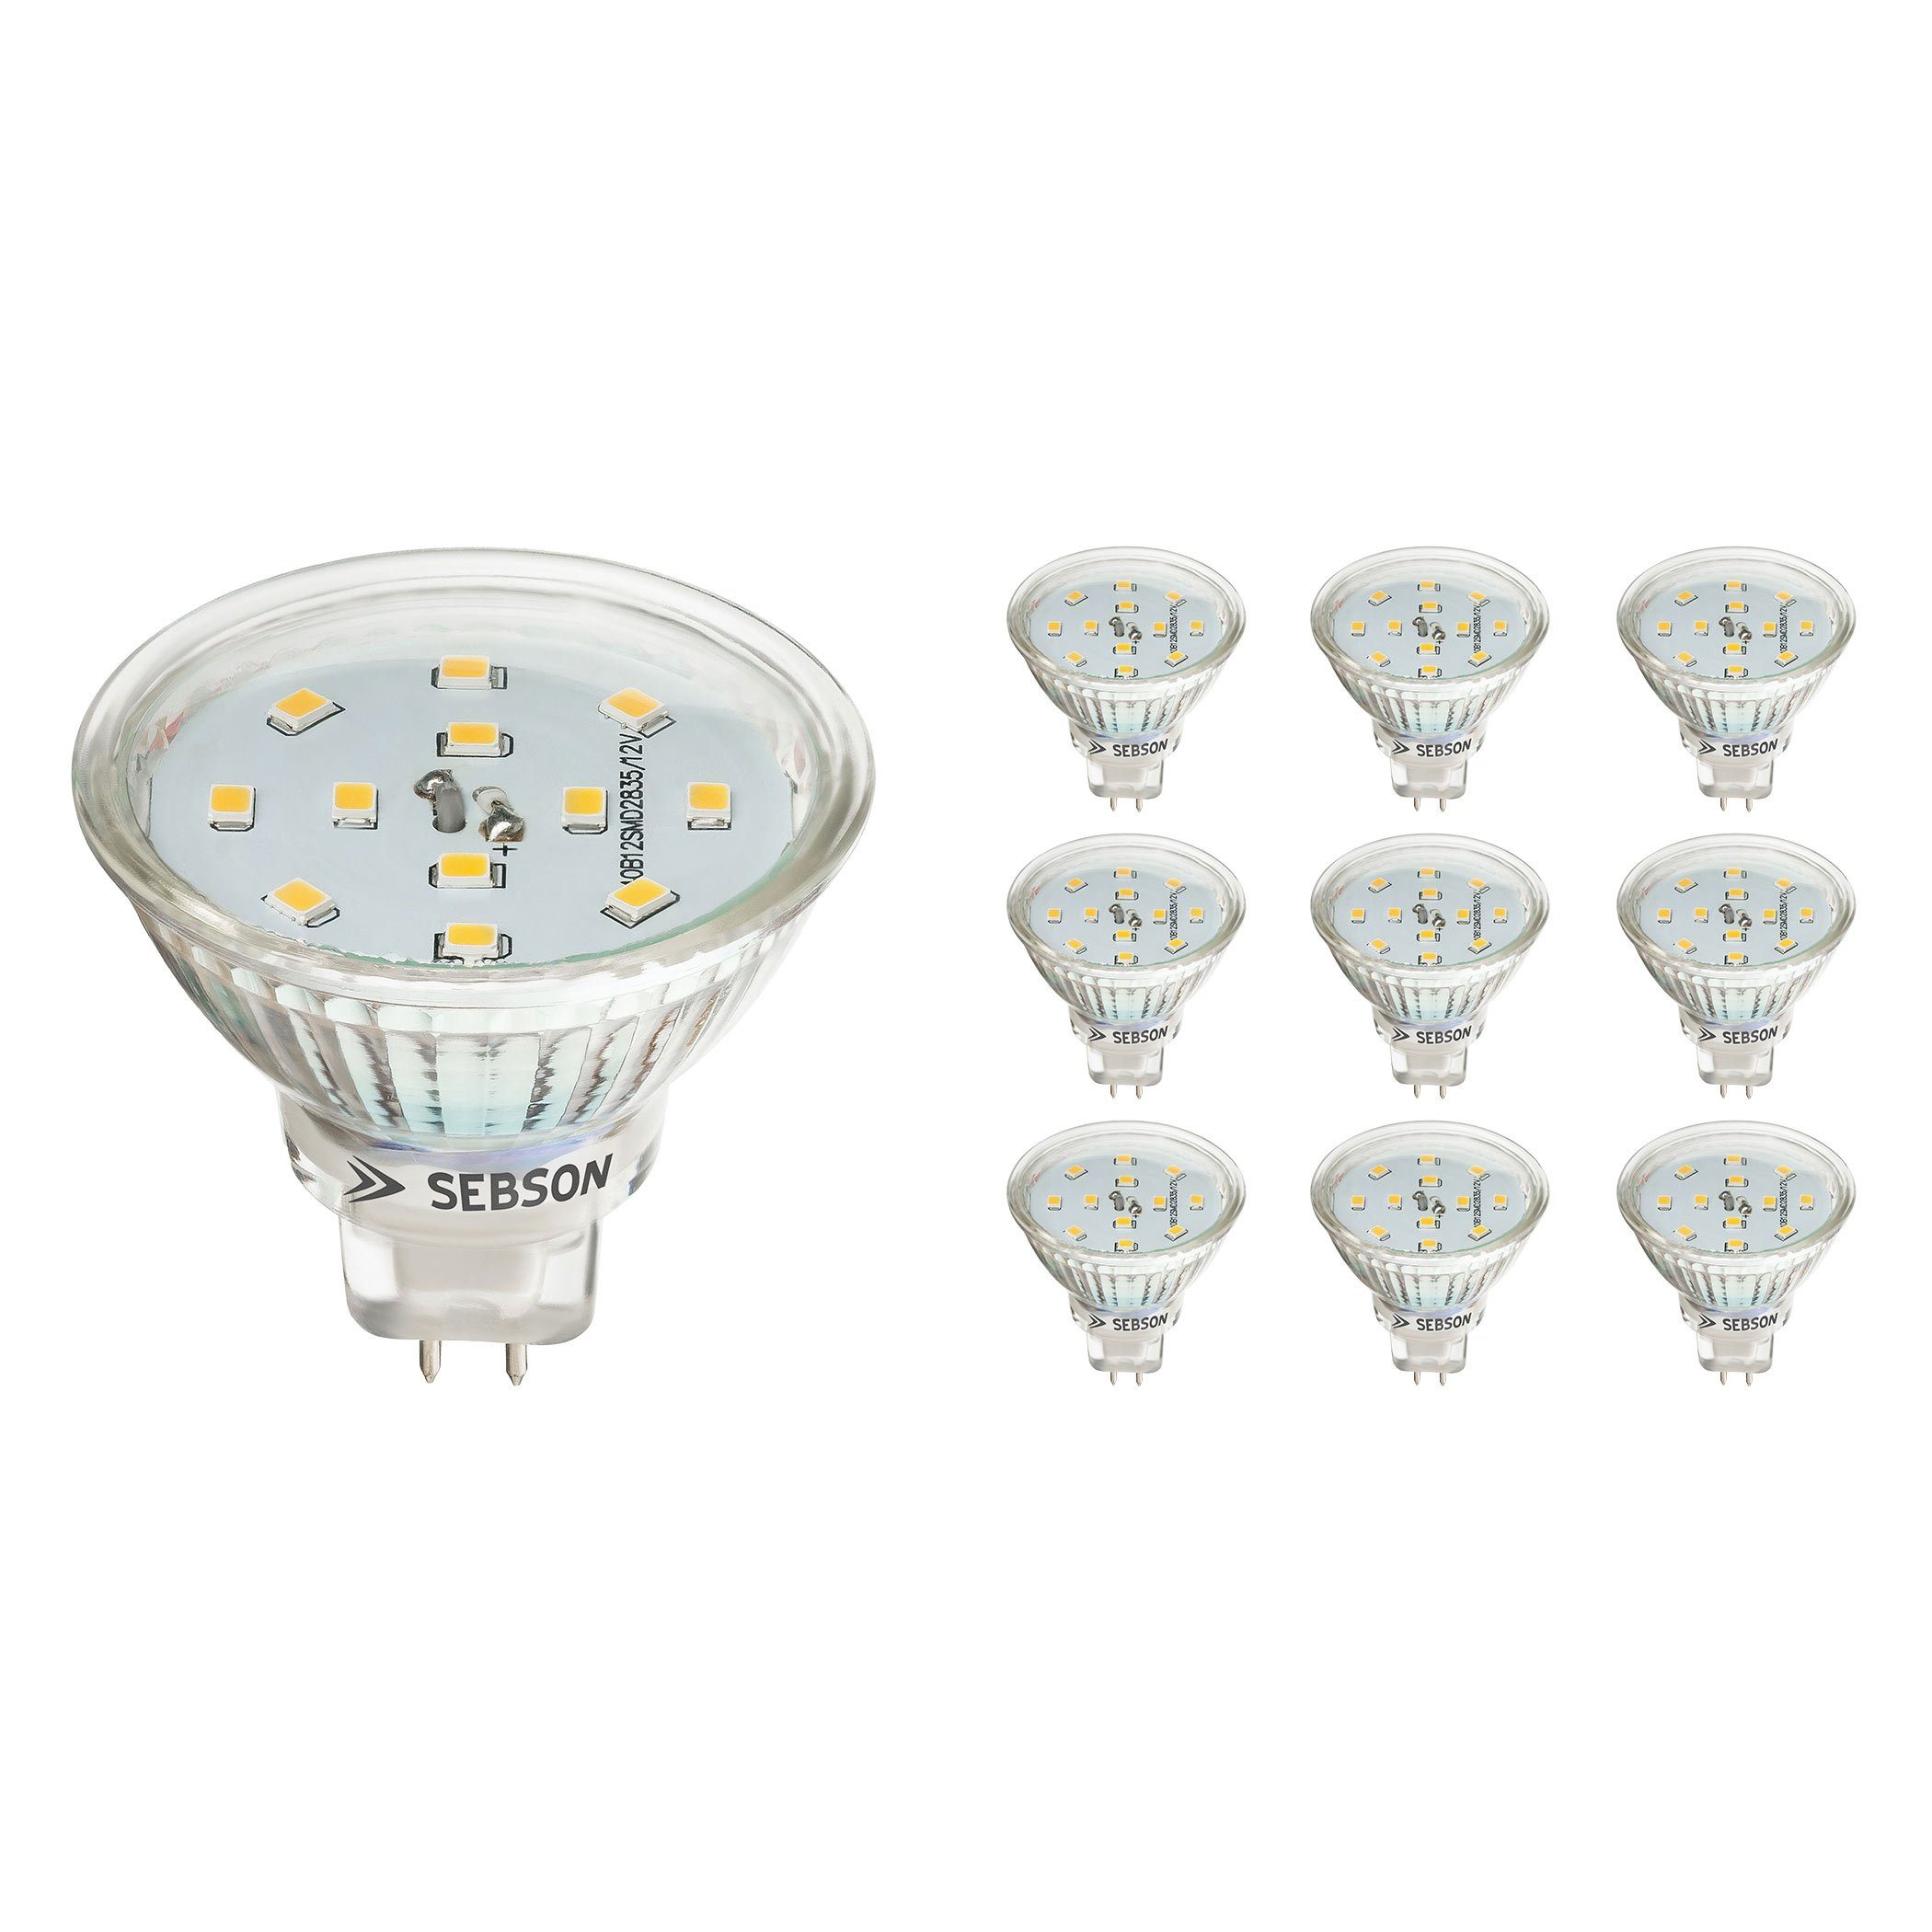 SEBSON LED Lampe GU5.3 / MR16 5W warmweiß 3000k 420lm, Ra97, 12V DC LED  Leuchtmittel, Einbaustrahler flimmerfrei, 10er Pack LED-Leuchtmittel